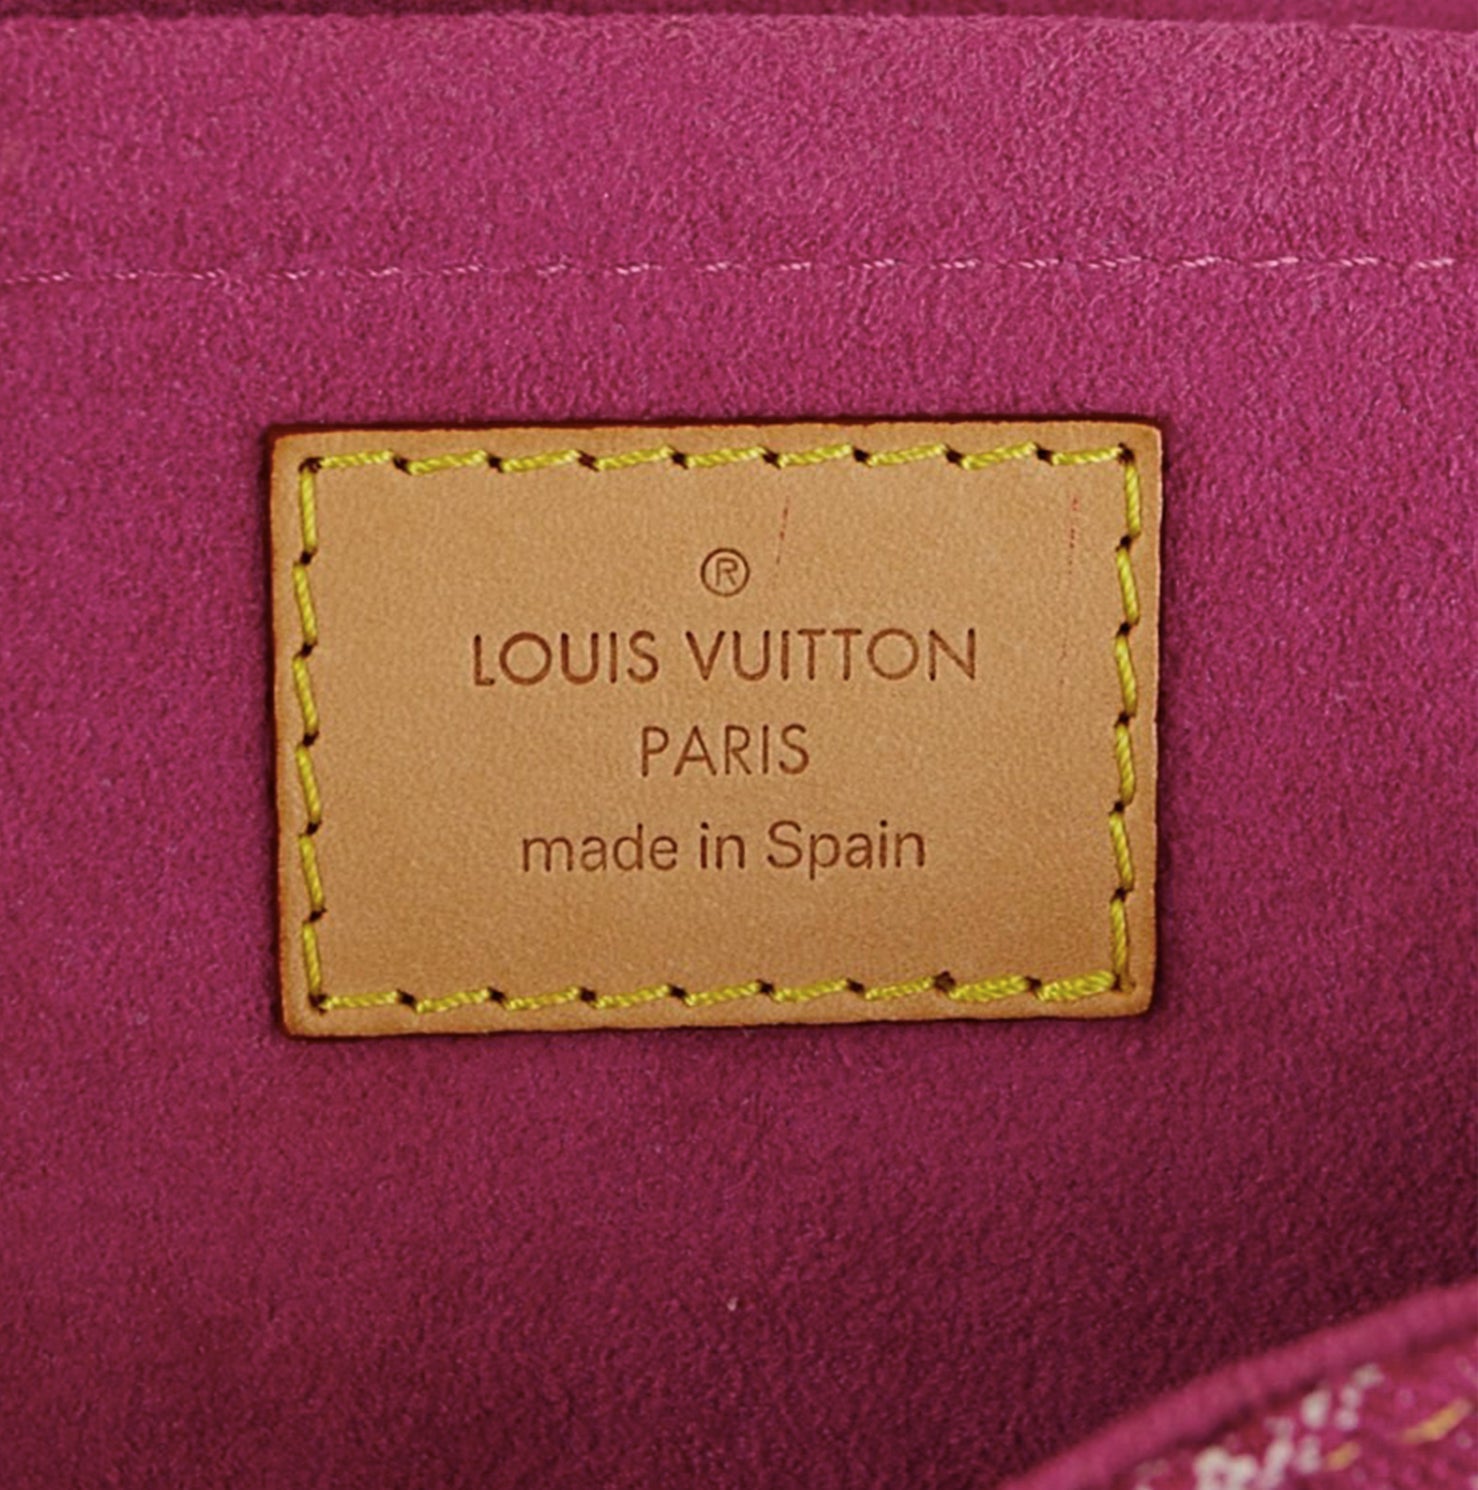 Pin by Jenfit10 on Louis Vuitton  Bags, Louis vuitton bag, Louis